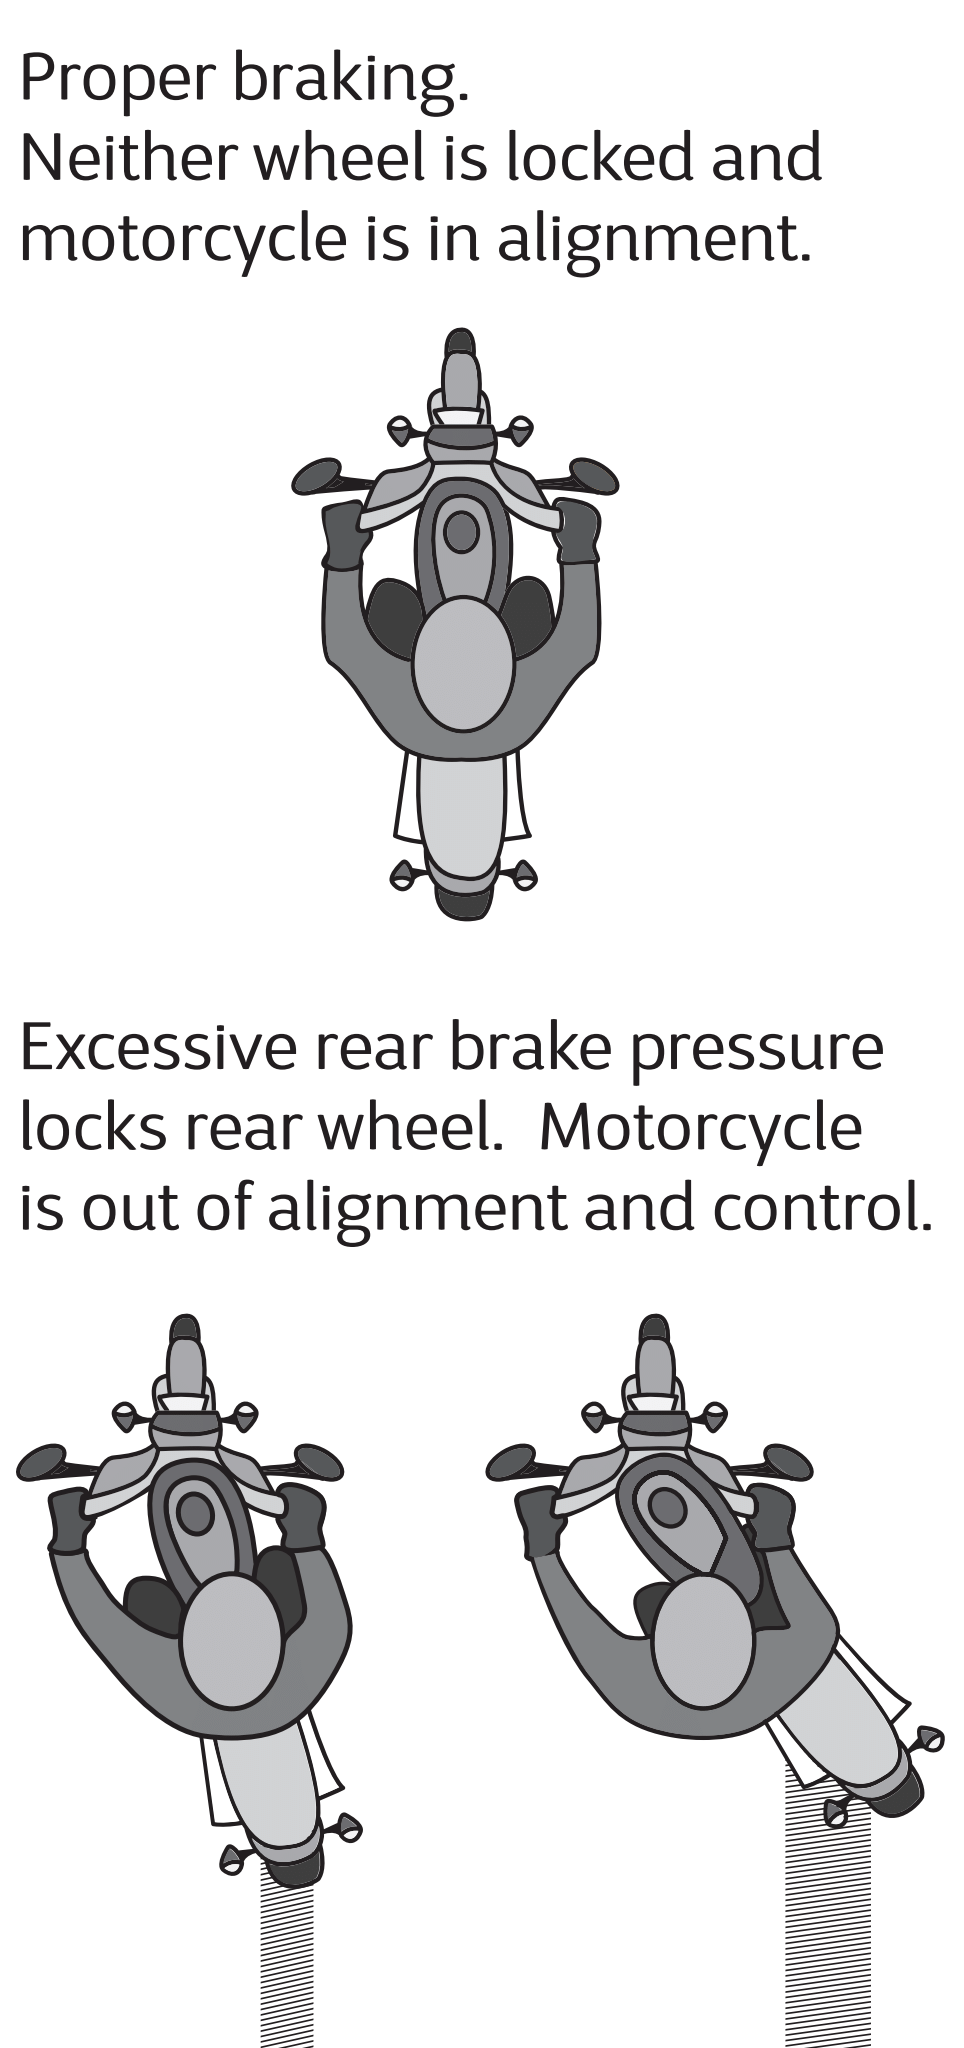 image of proper braking on a motorcycle